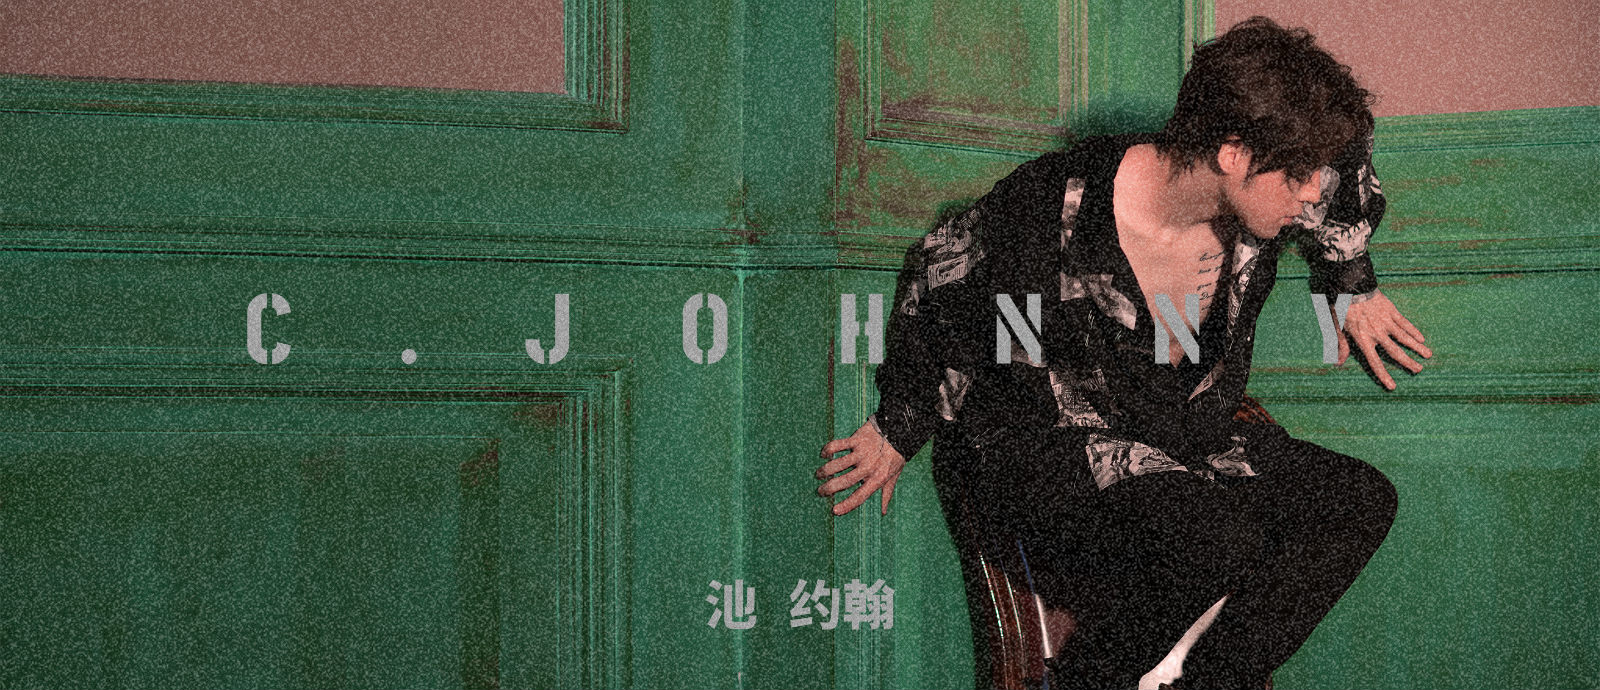 首张同名专辑《C.JOHNNY池约翰》上线 全新音乐回归真实的池约翰